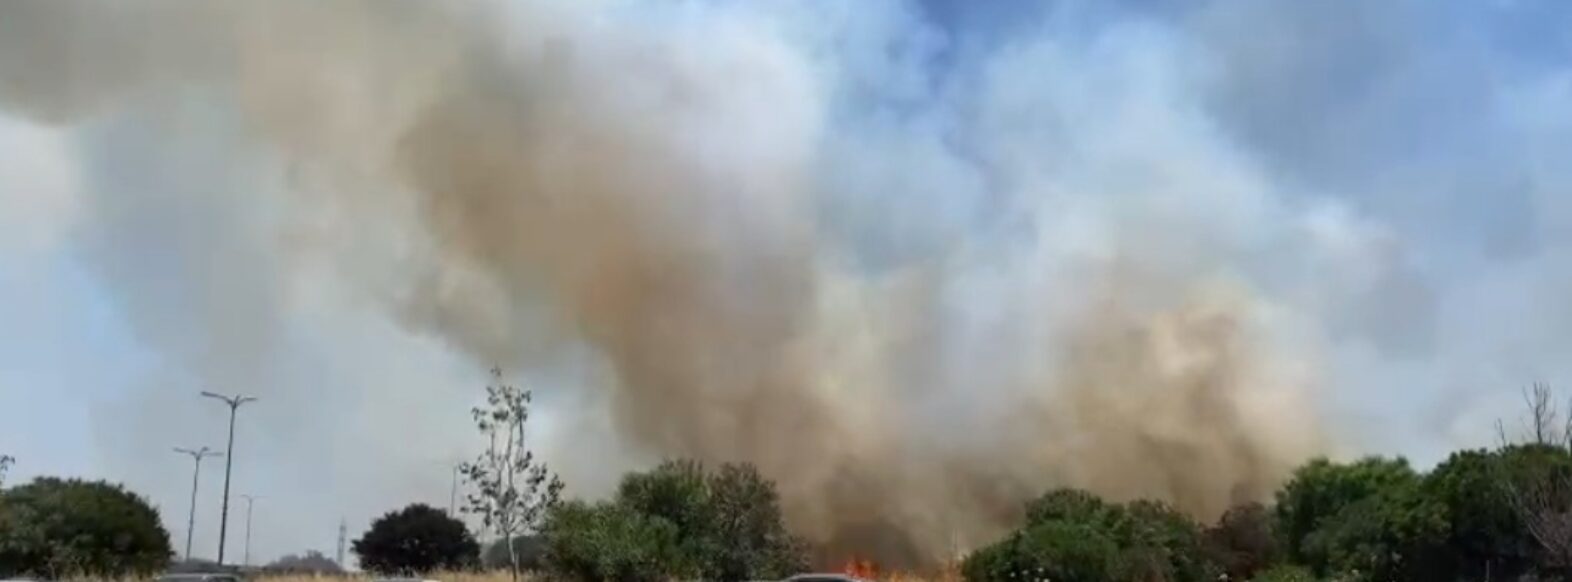 שריפת קוצים פרצה באיזור המוסכים במפרץ חיפה